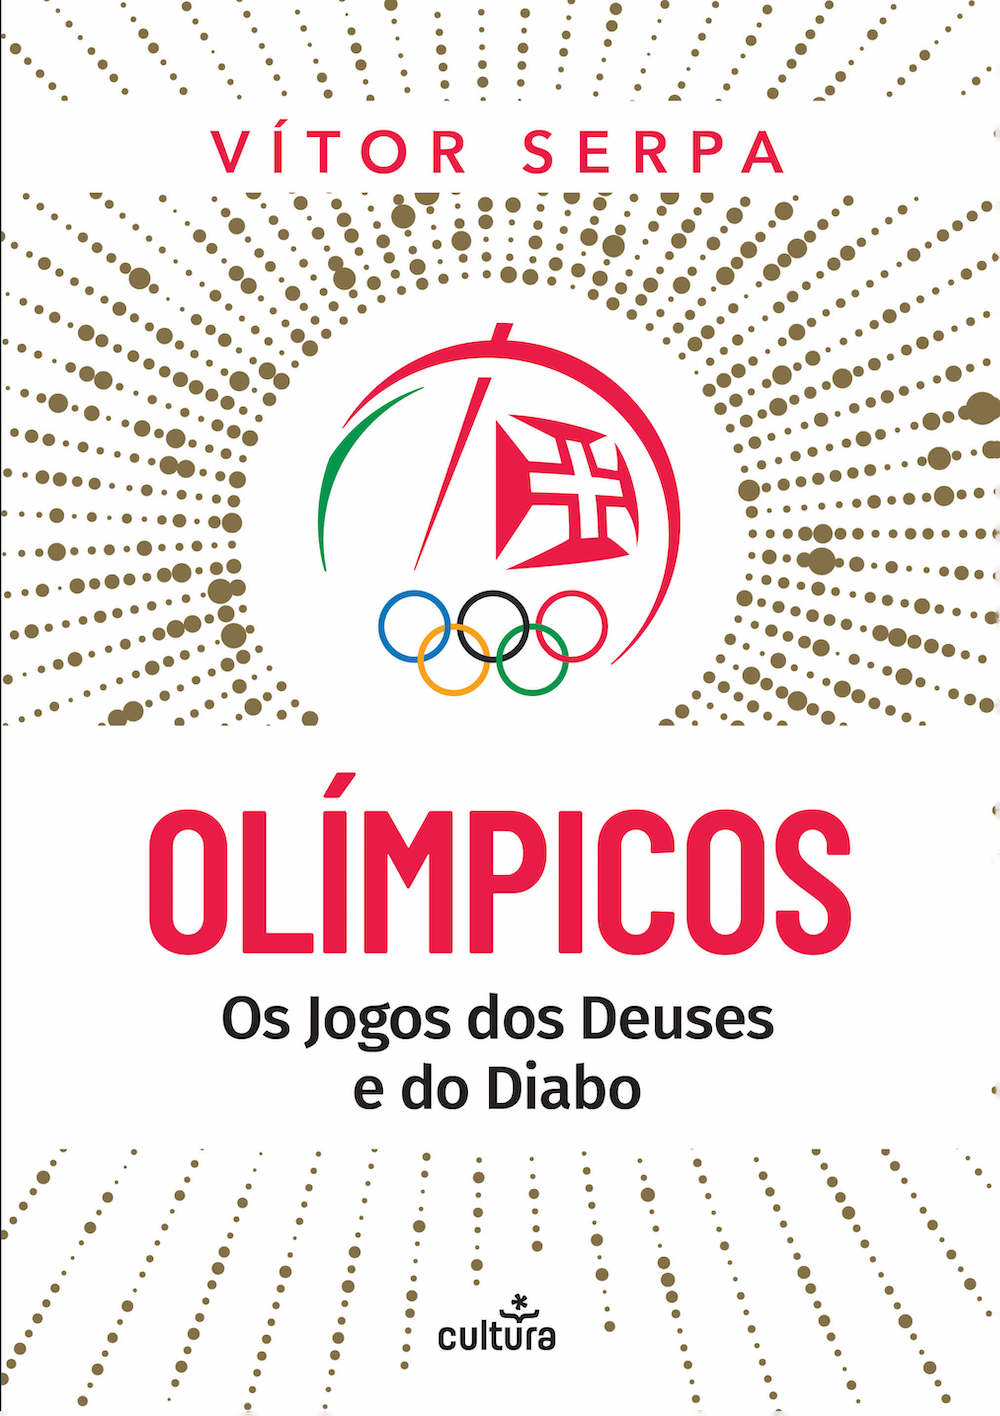 Olímpicos — Os Jogos dos Deuses e do Diabo